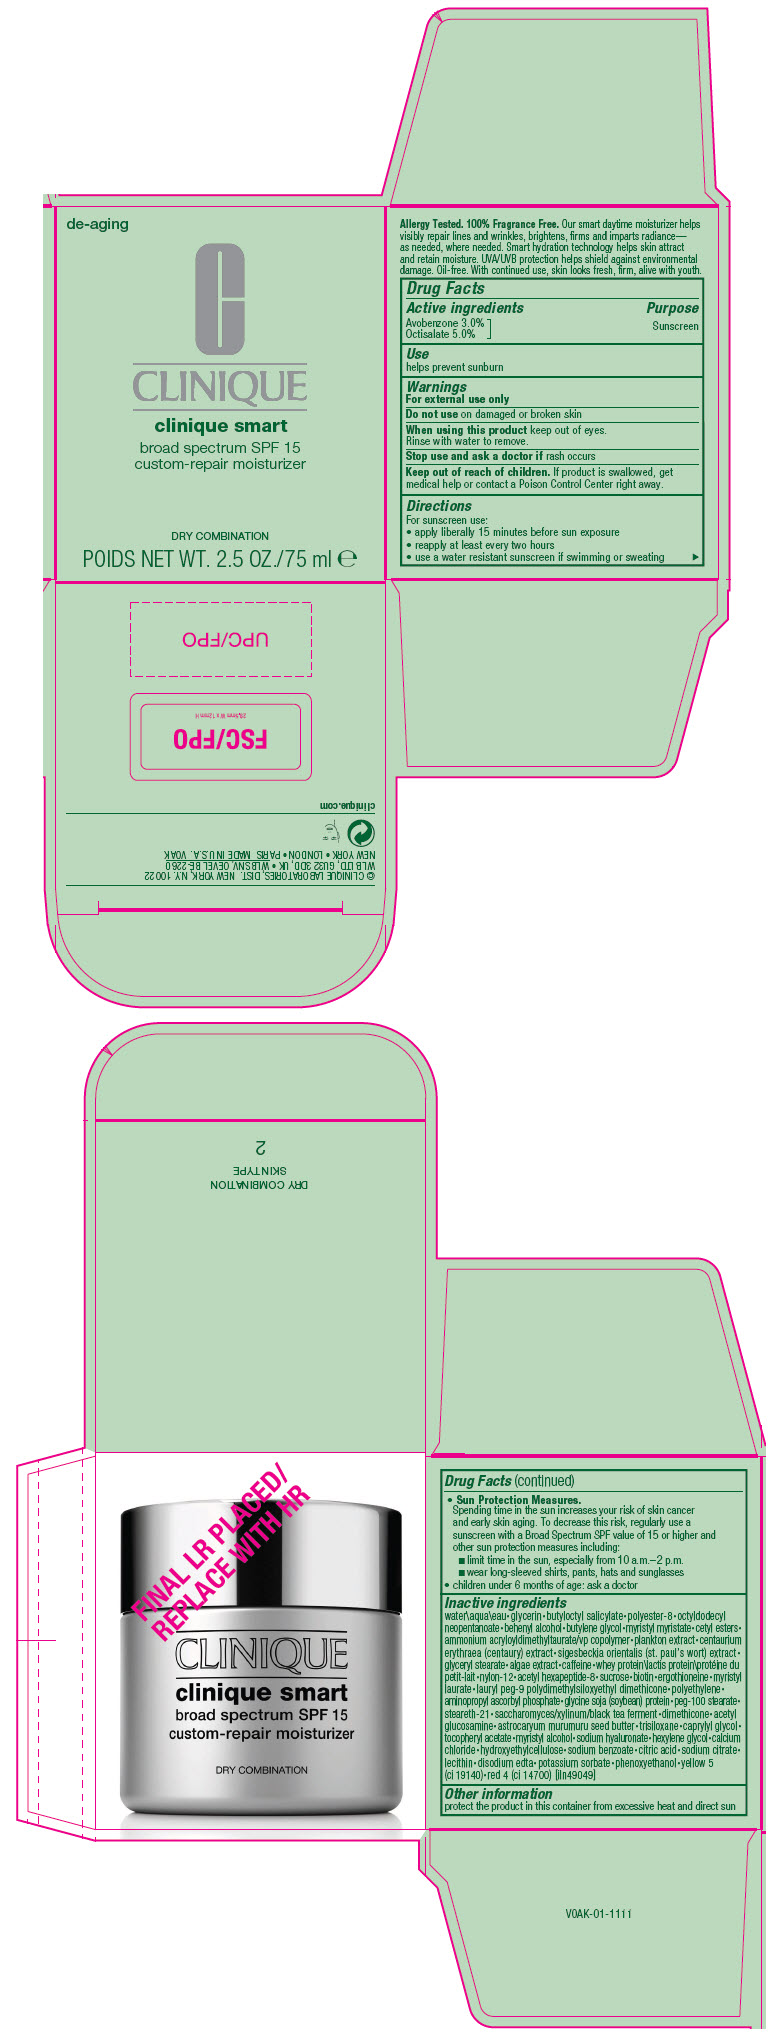 PRINCIPAL DISPLAY PANEL - 75 ml Jar Carton